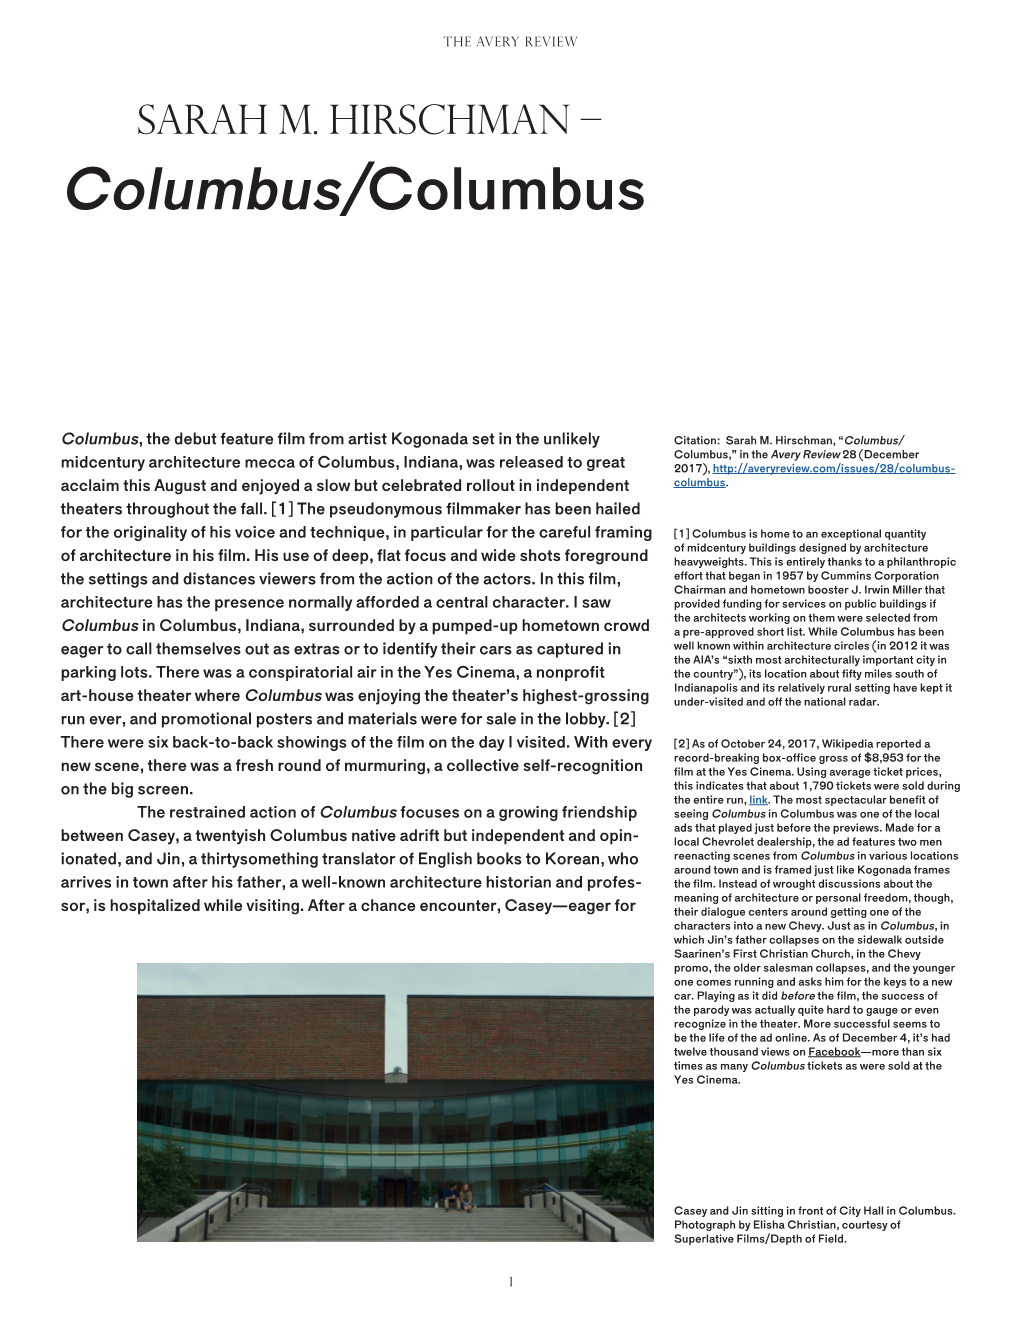 Columbus/Columbus